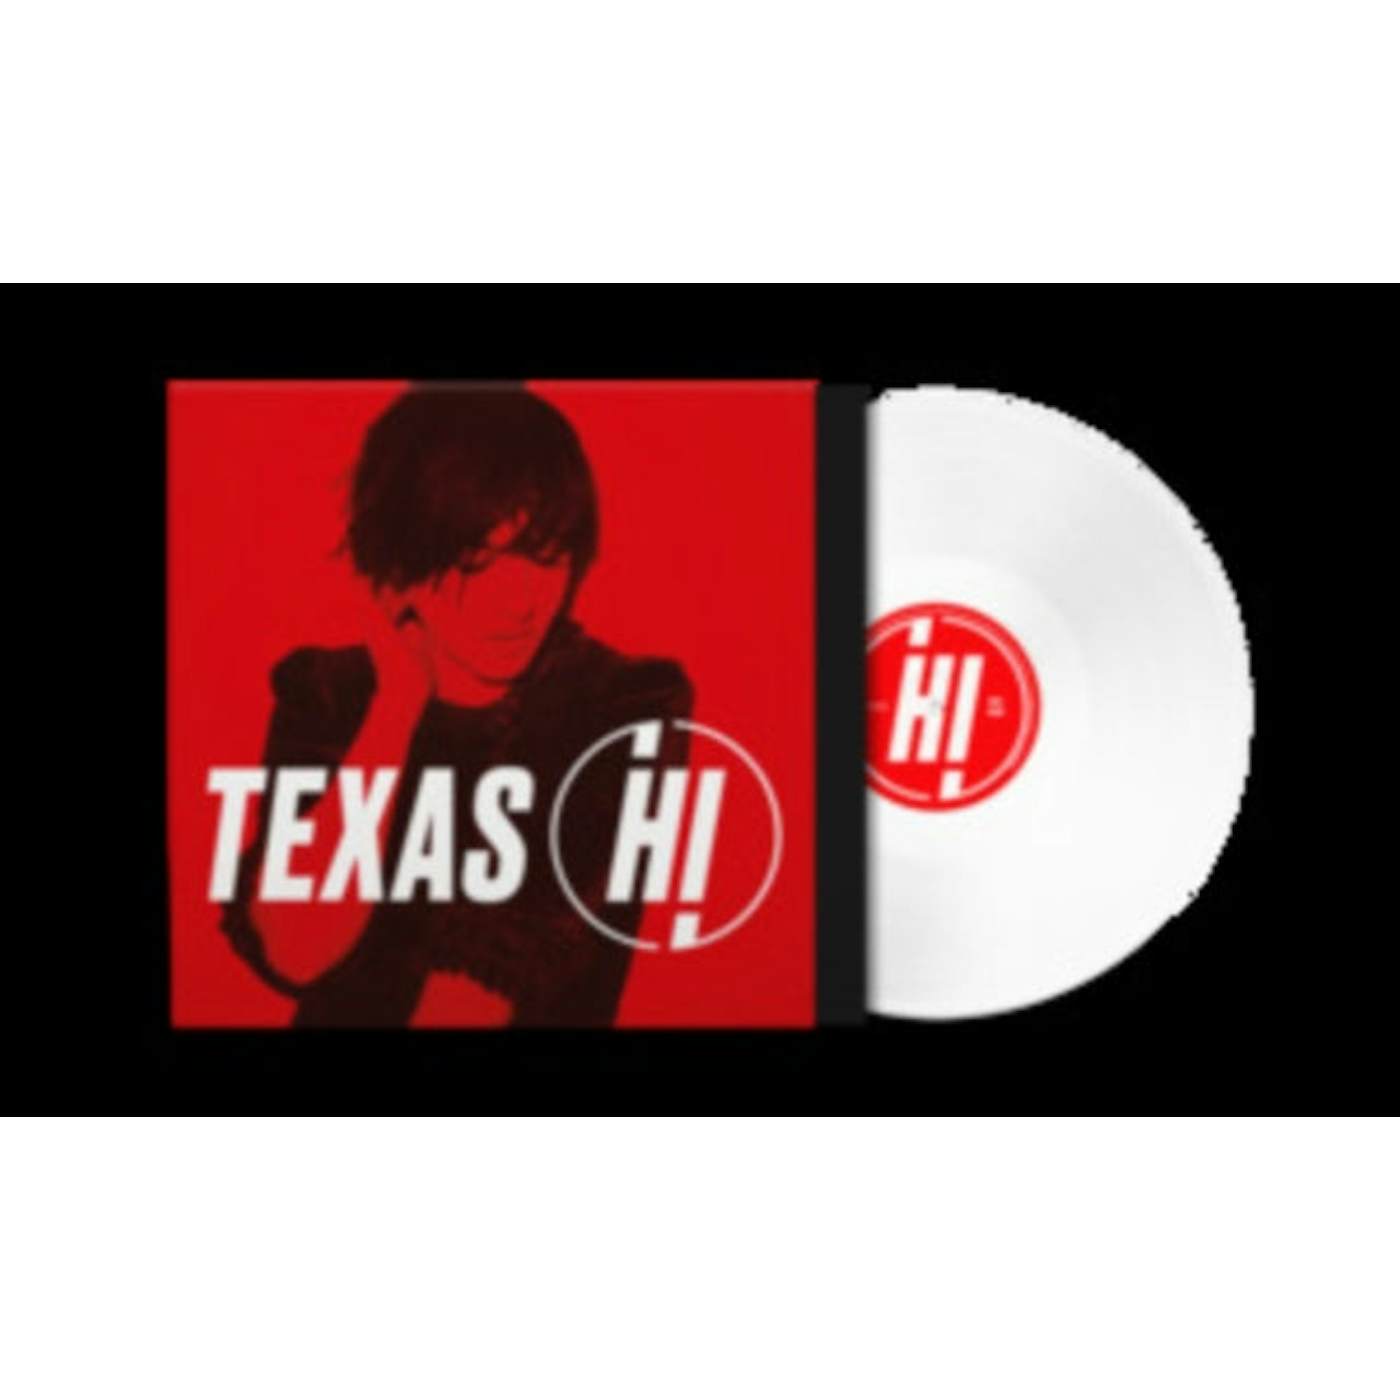 Texas LP Vinyl Record - Hi